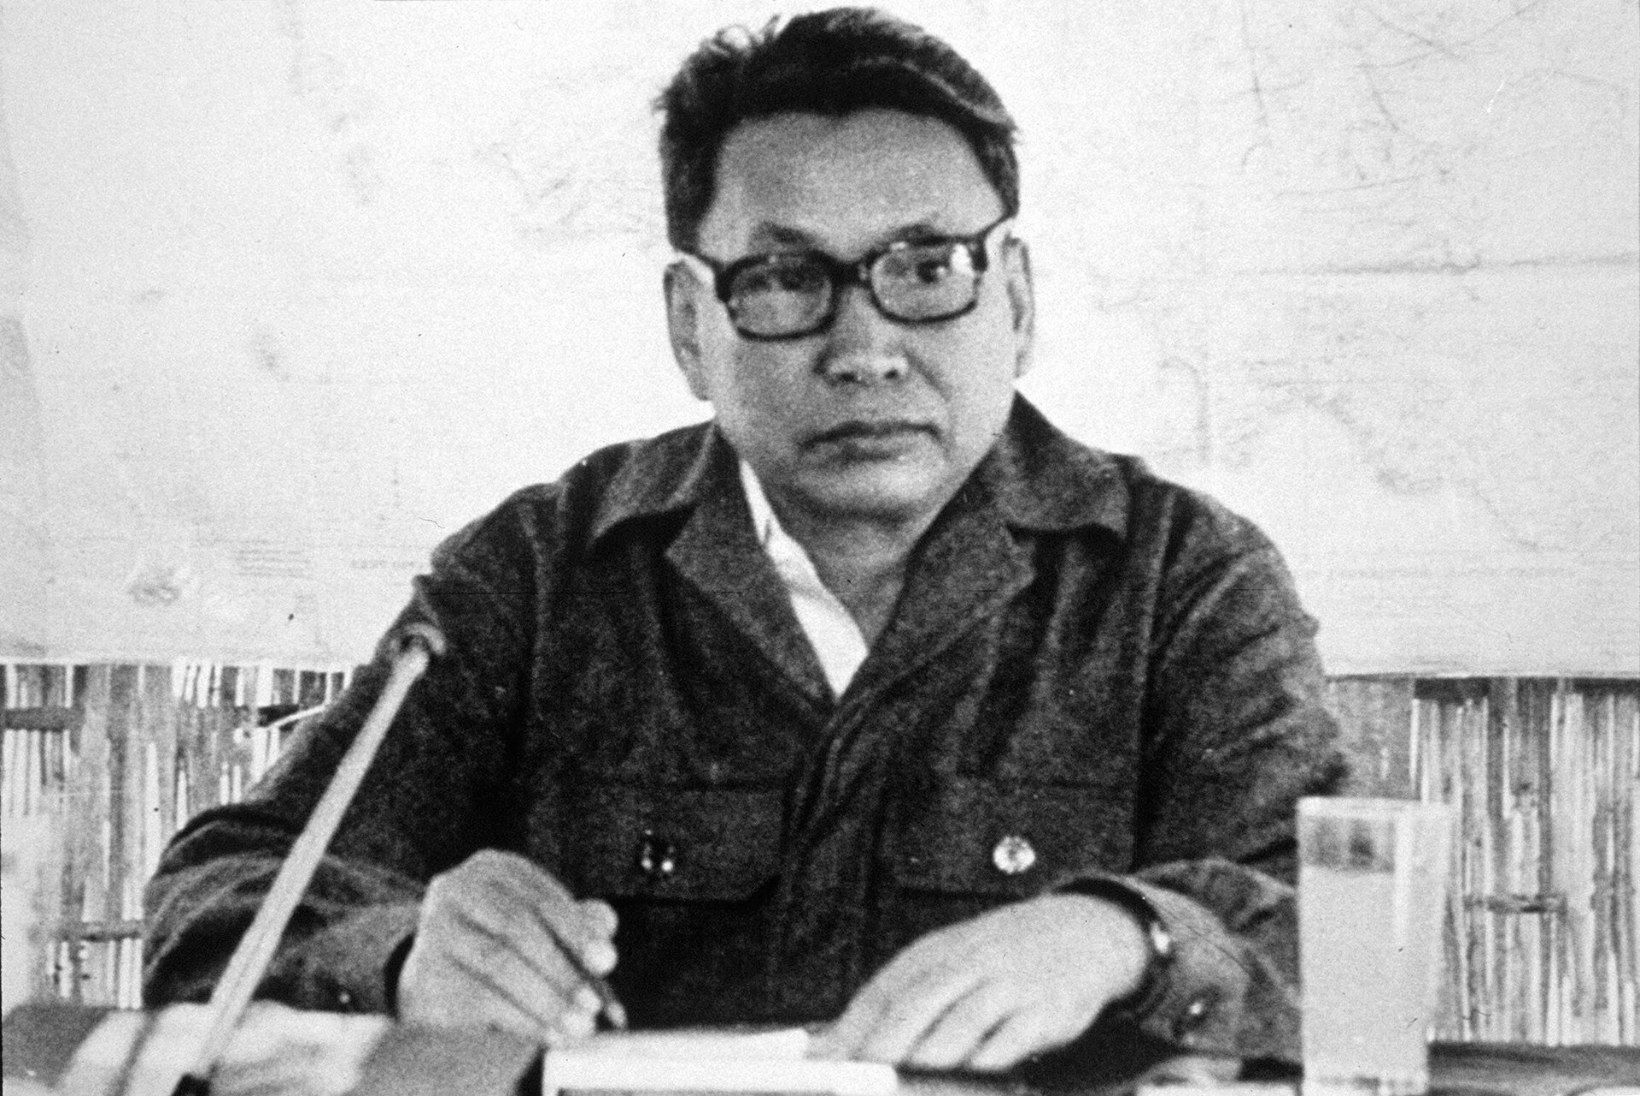 VEND NUMBER ÜKS: verine valitseja Pol Pot soovis luua utoopilist agraarühiskonda